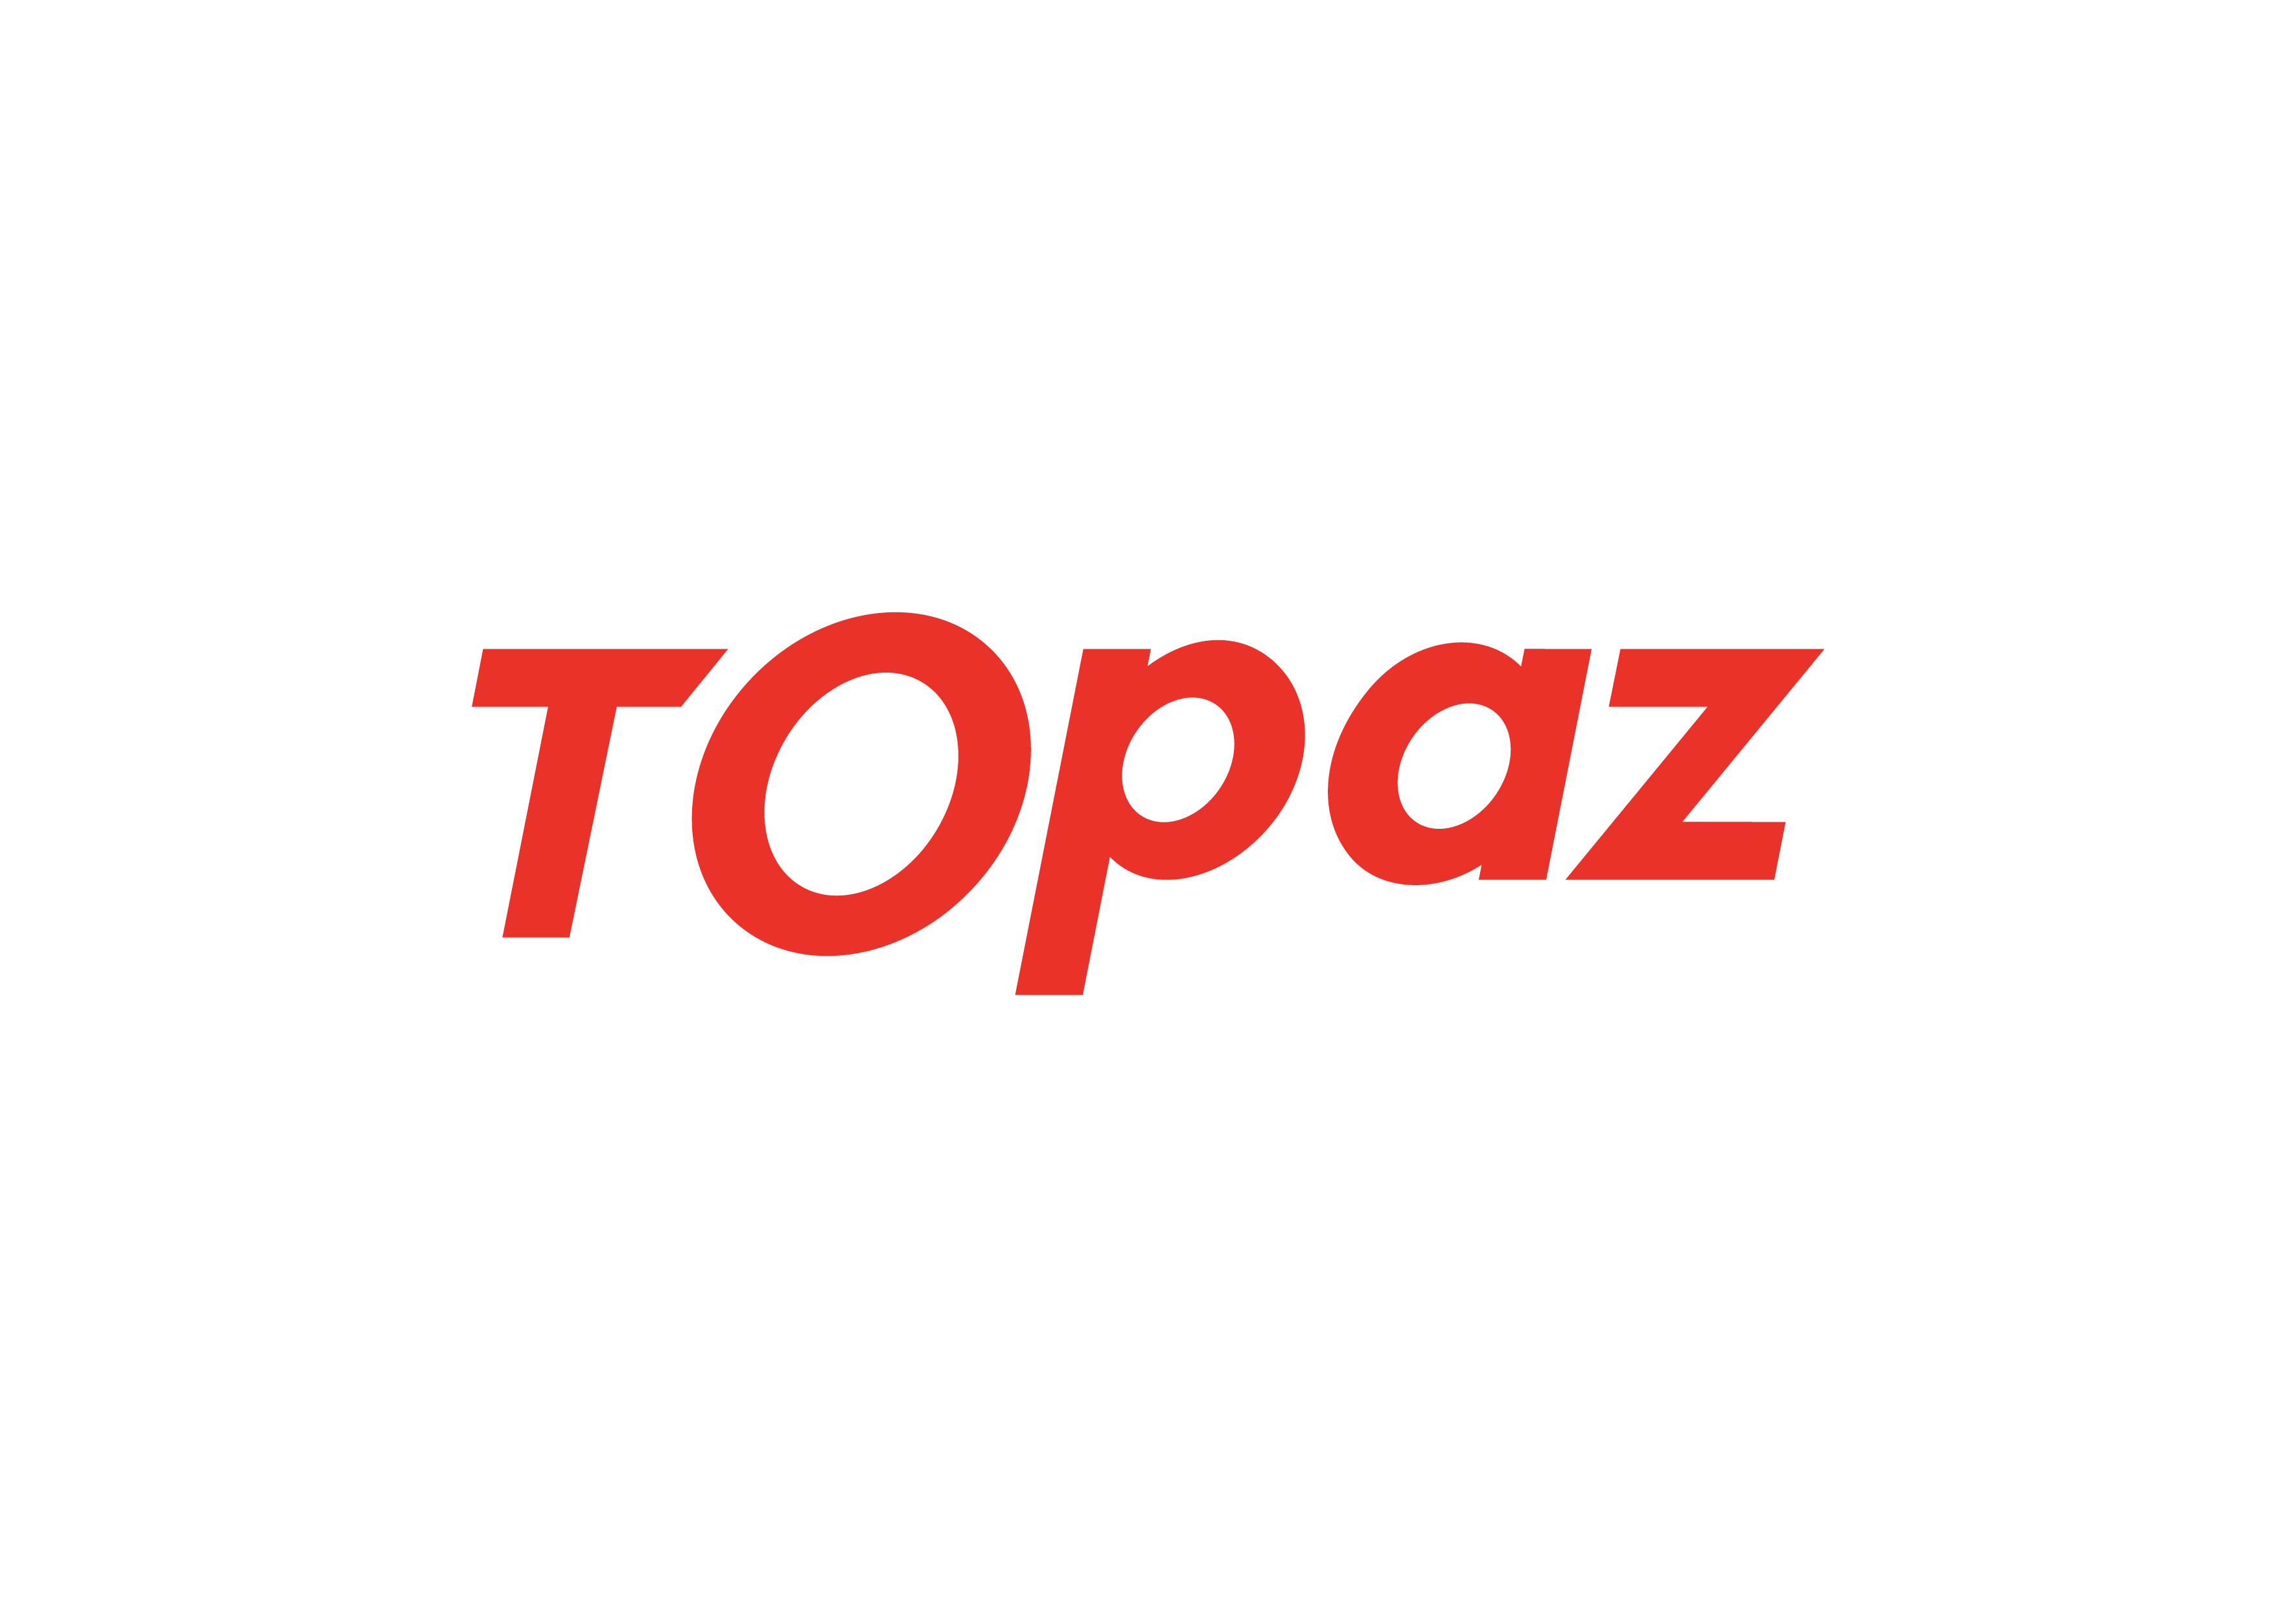 TOPAZ выделил 500 тысяч манатов на борьбу с коронавирусом